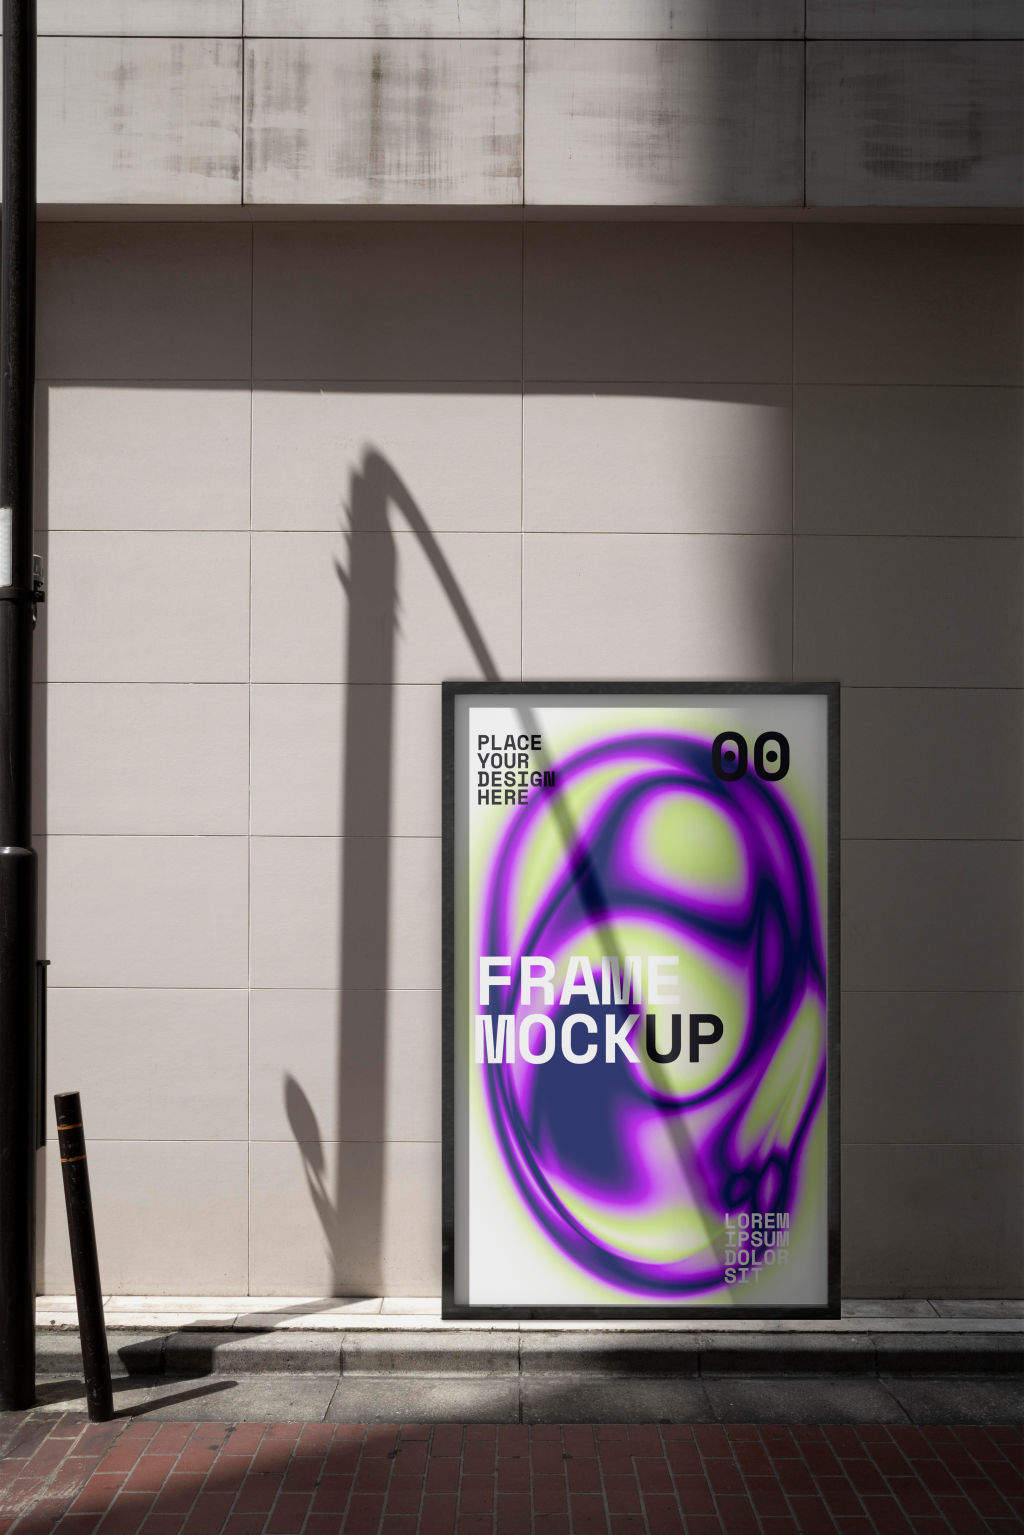 8款逼真户外街头海报展示相框广告画面展示样机贴图PSD素材下载Advertising Mockup Set